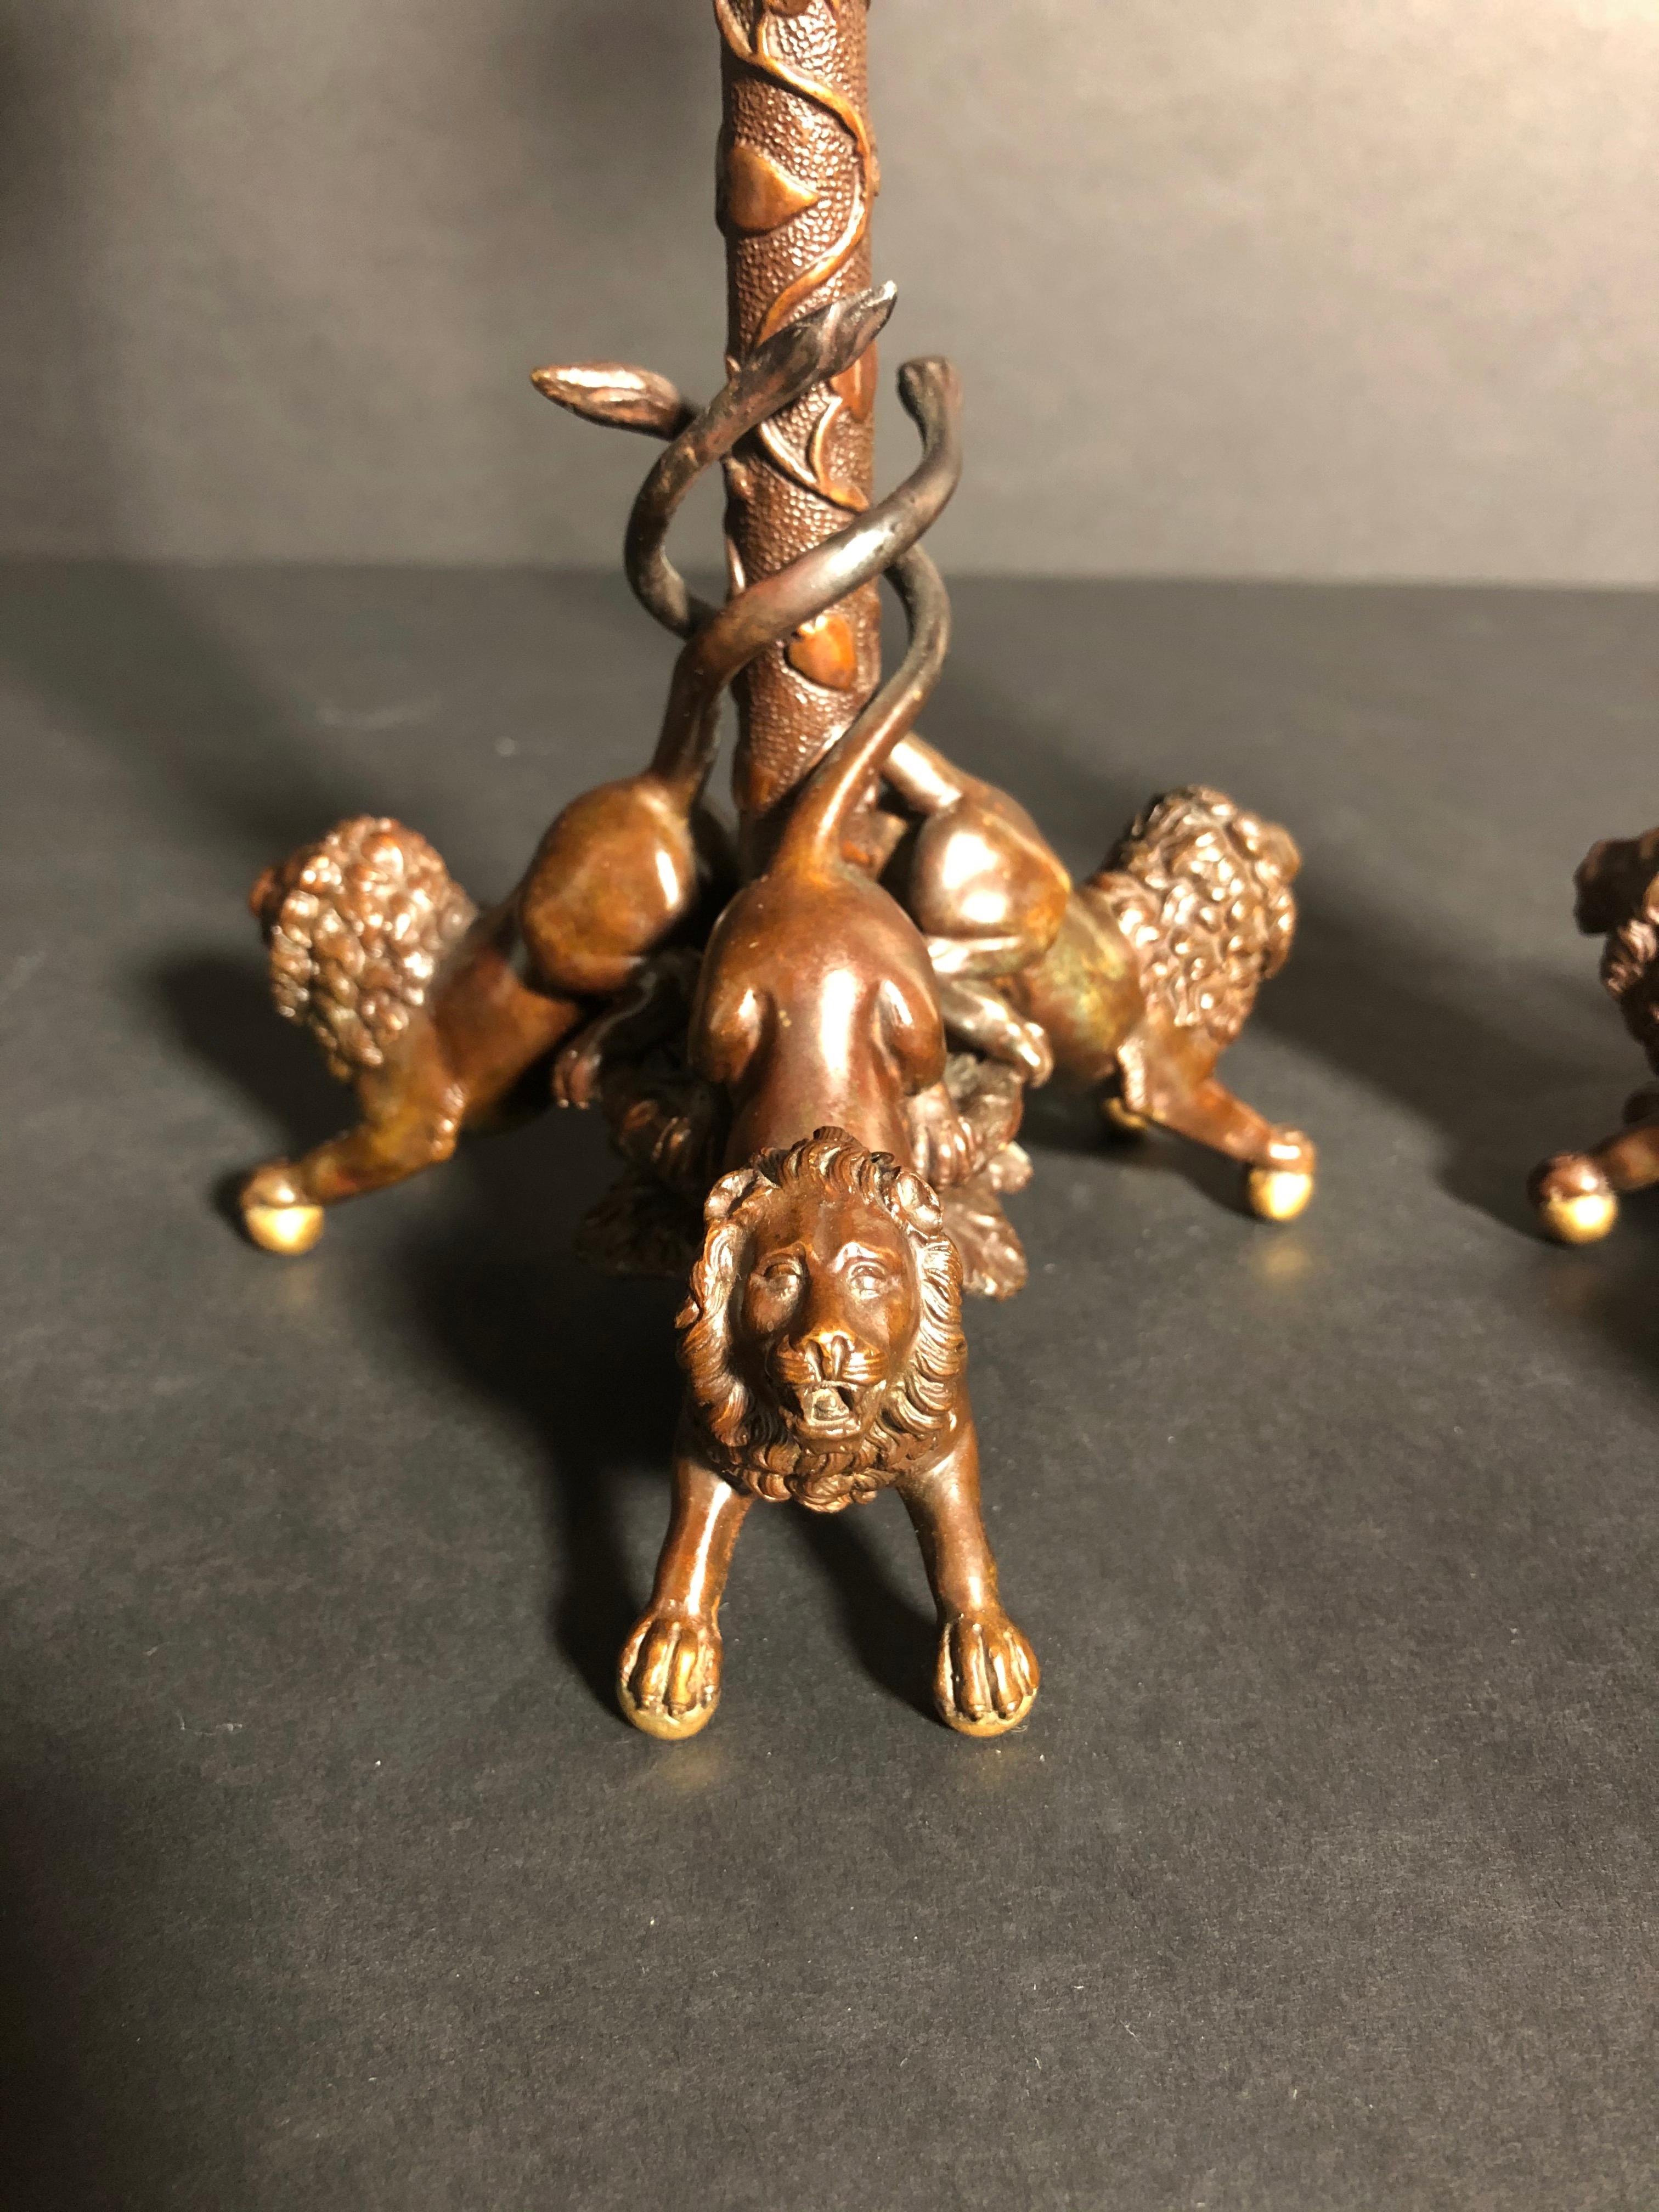 Hochwertiger, paketvergoldeter und patinierter, figuraler Kerzenleuchter des 19. Jahrhunderts mit drei Löwen auf Kugelfüßen, die eine mit Blättern und Ranken bedeckte Säule umschlingen, die einen Kerzenbecher mit Widderköpfen, Trauben und Blättern